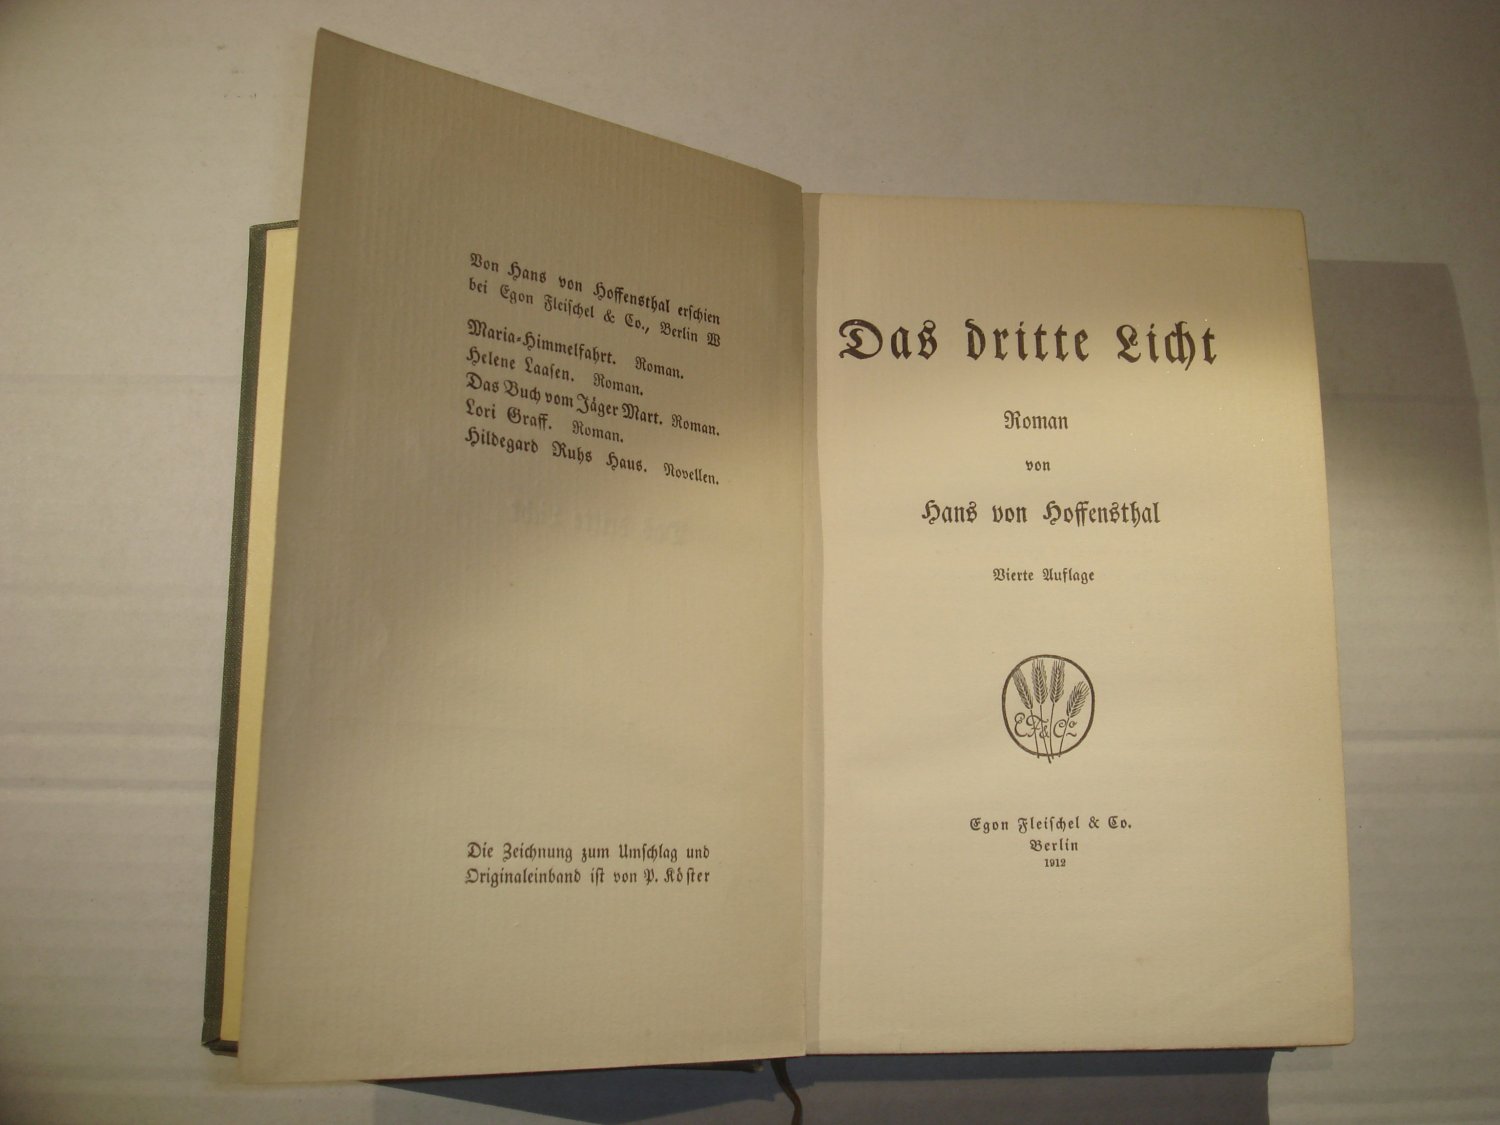 Das dritte Licht.“ (Hoffensthal, Hans von) – Buch antiquarisch kaufen –  A02tN2mI01ZZn